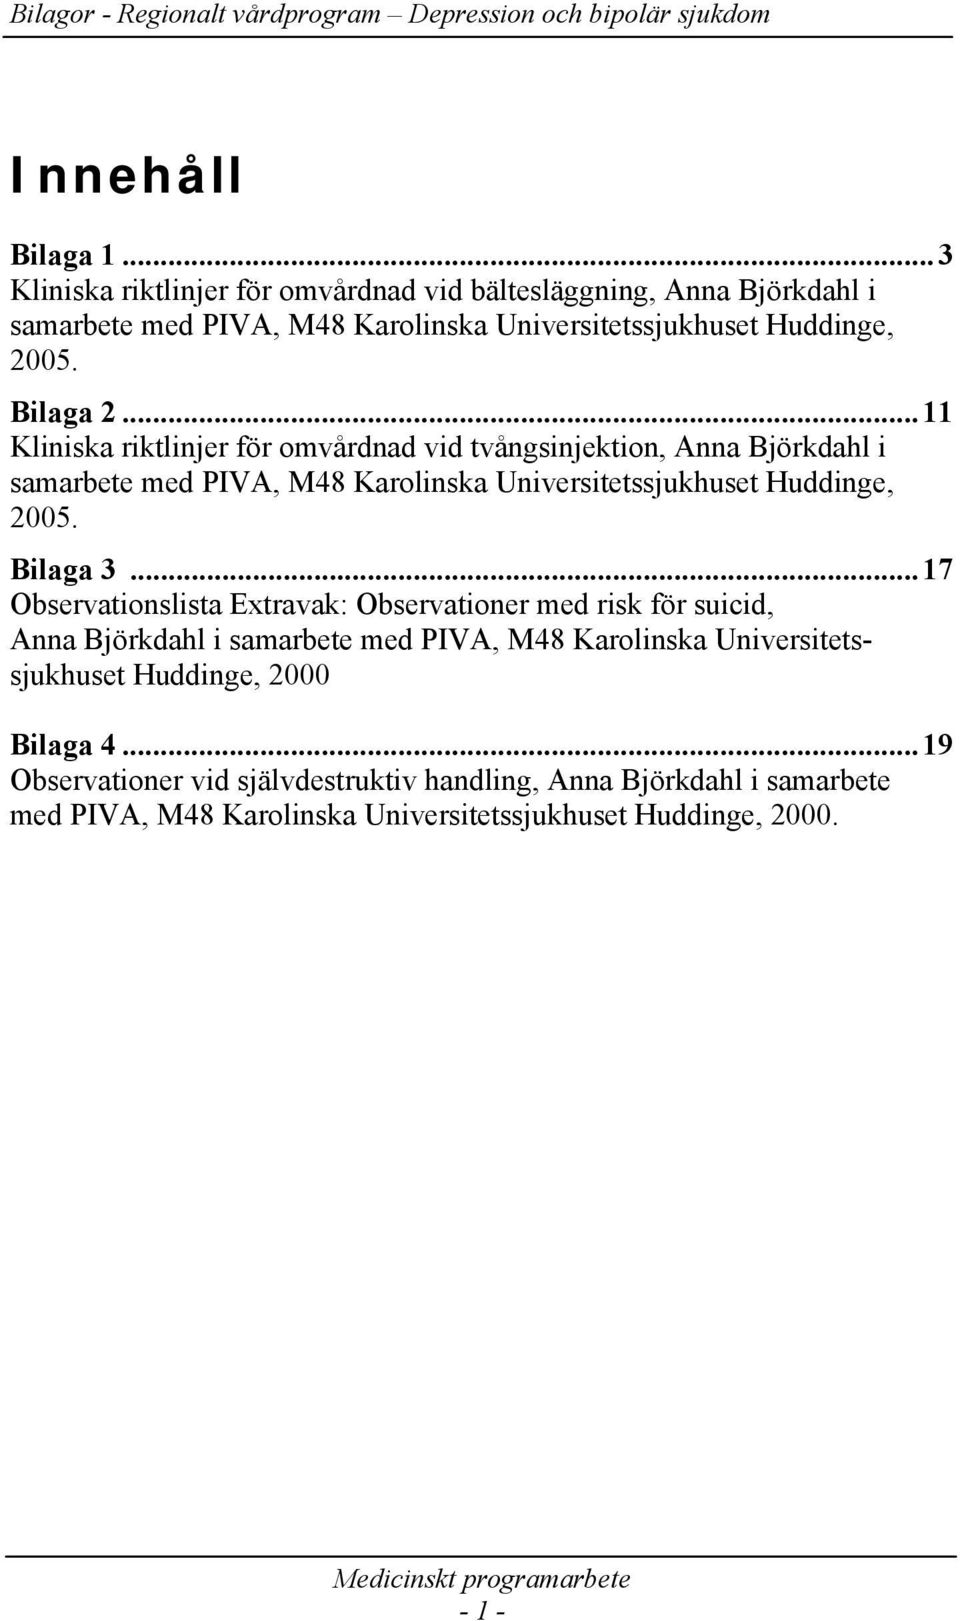 ..11 Kliniska riktlinjer för omvårdnad vid tvångsinjektion, Anna Björkdahl i samarbete med PIVA, M48 Karolinska Universitetssjukhuset Huddinge, 2005. Bilaga 3.